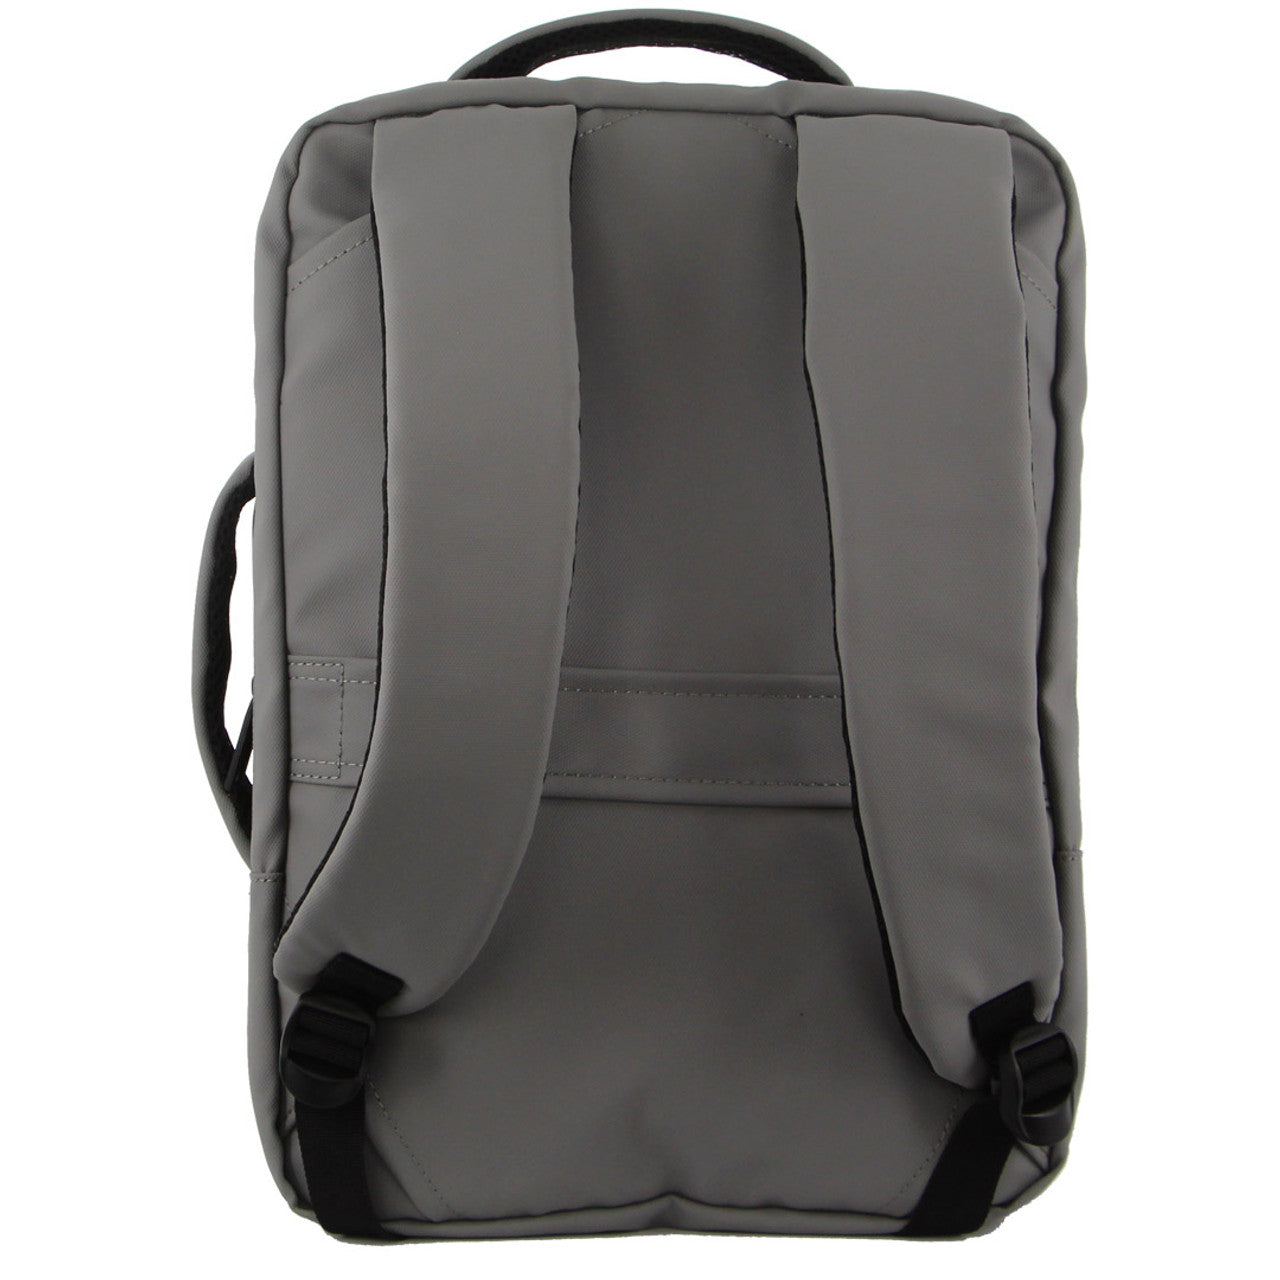 Pierre Cardin - PC3623 Top & Side handle 15in Laptop backpack w USB port - Black-3